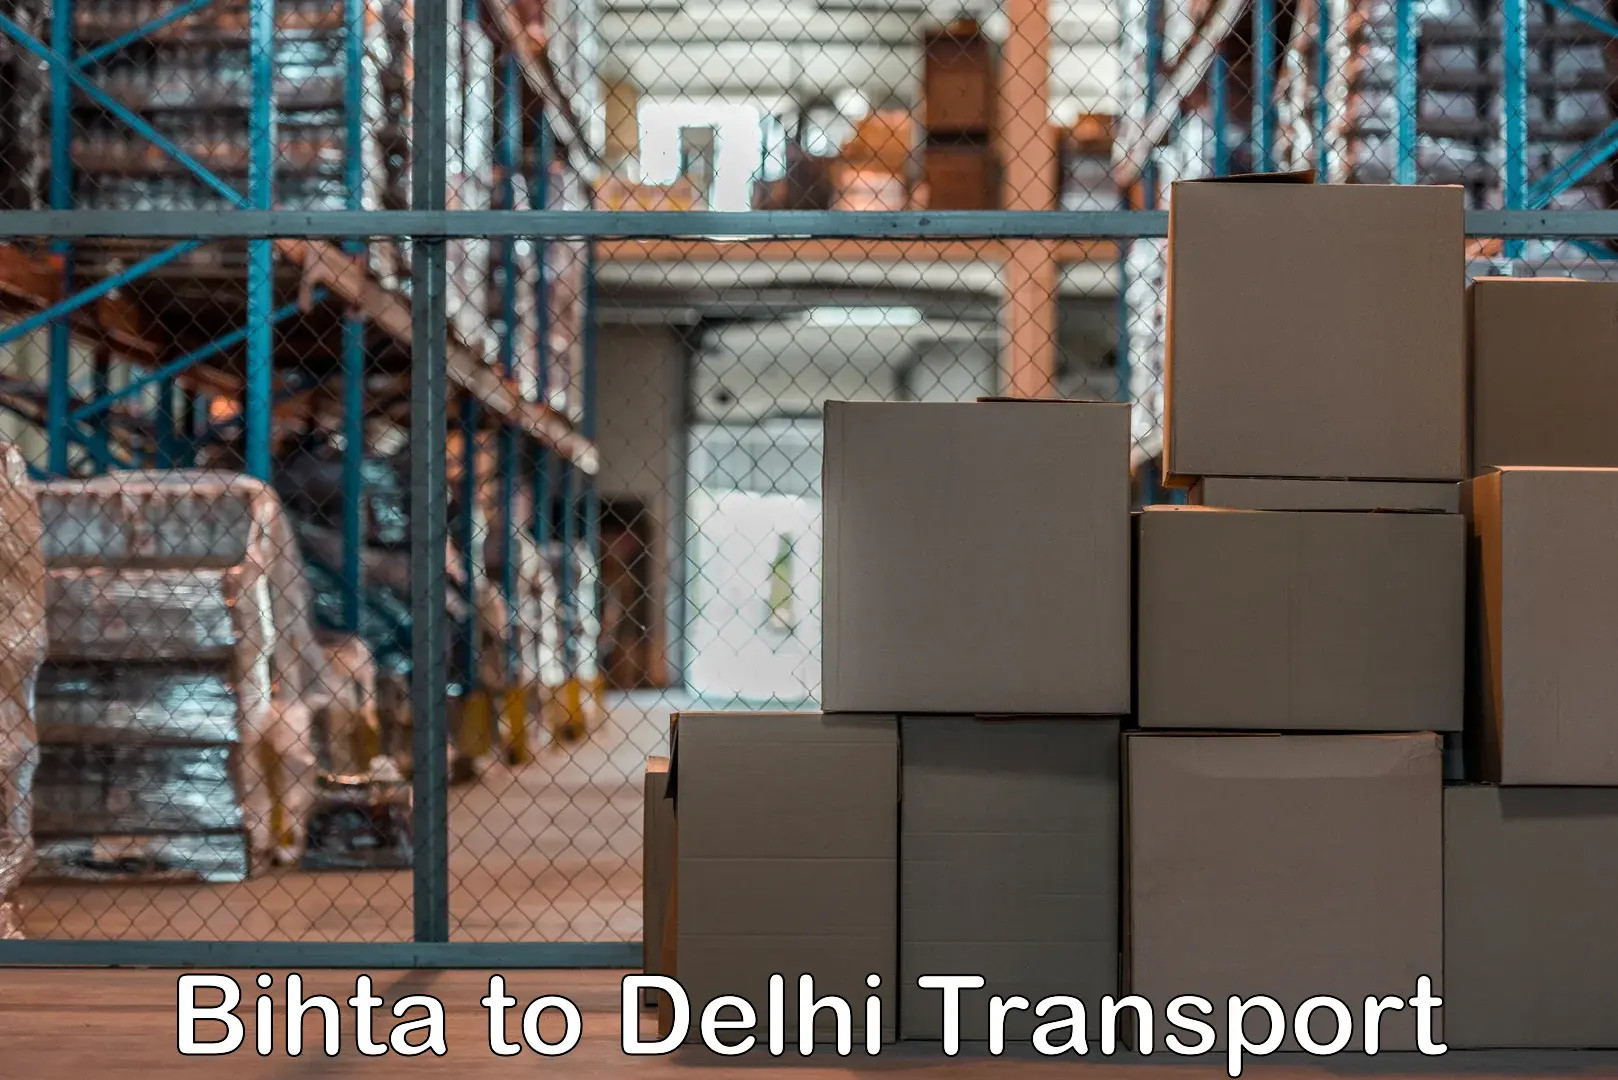 Road transport online services Bihta to IIT Delhi